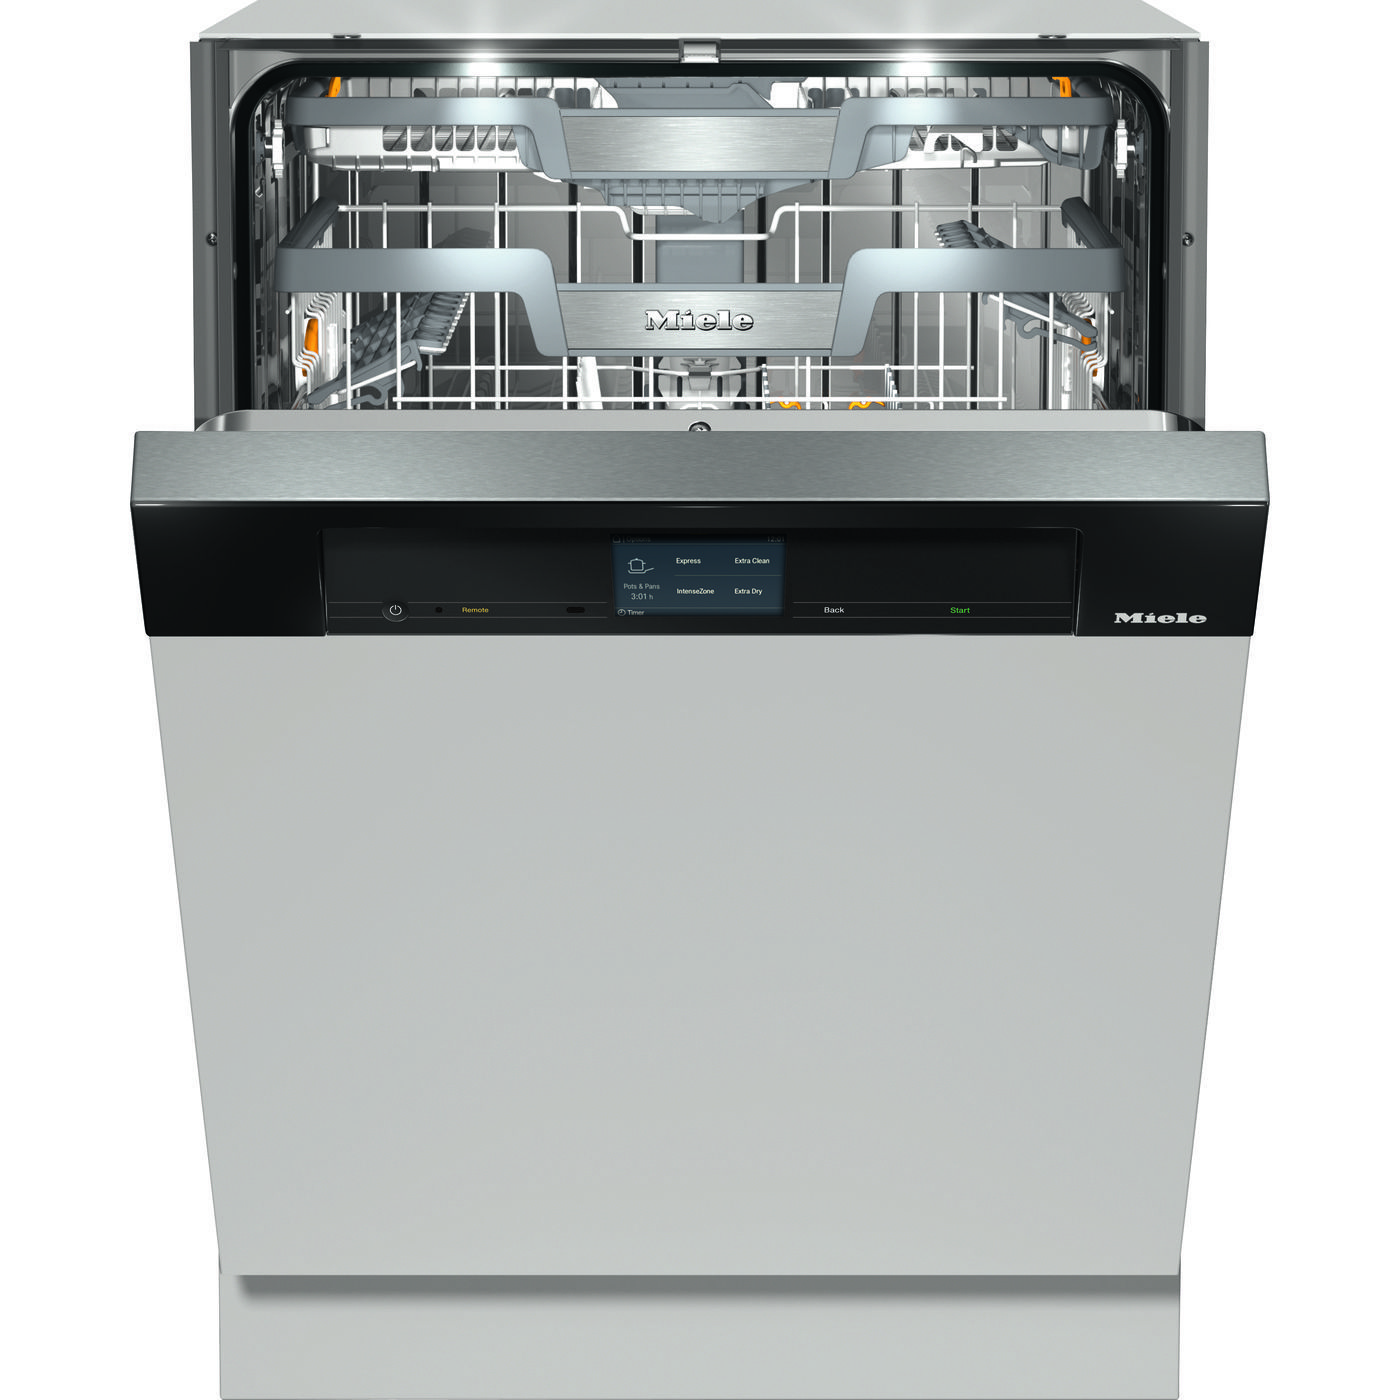 G 7916 SCi XXL AutoDos Dishwasher